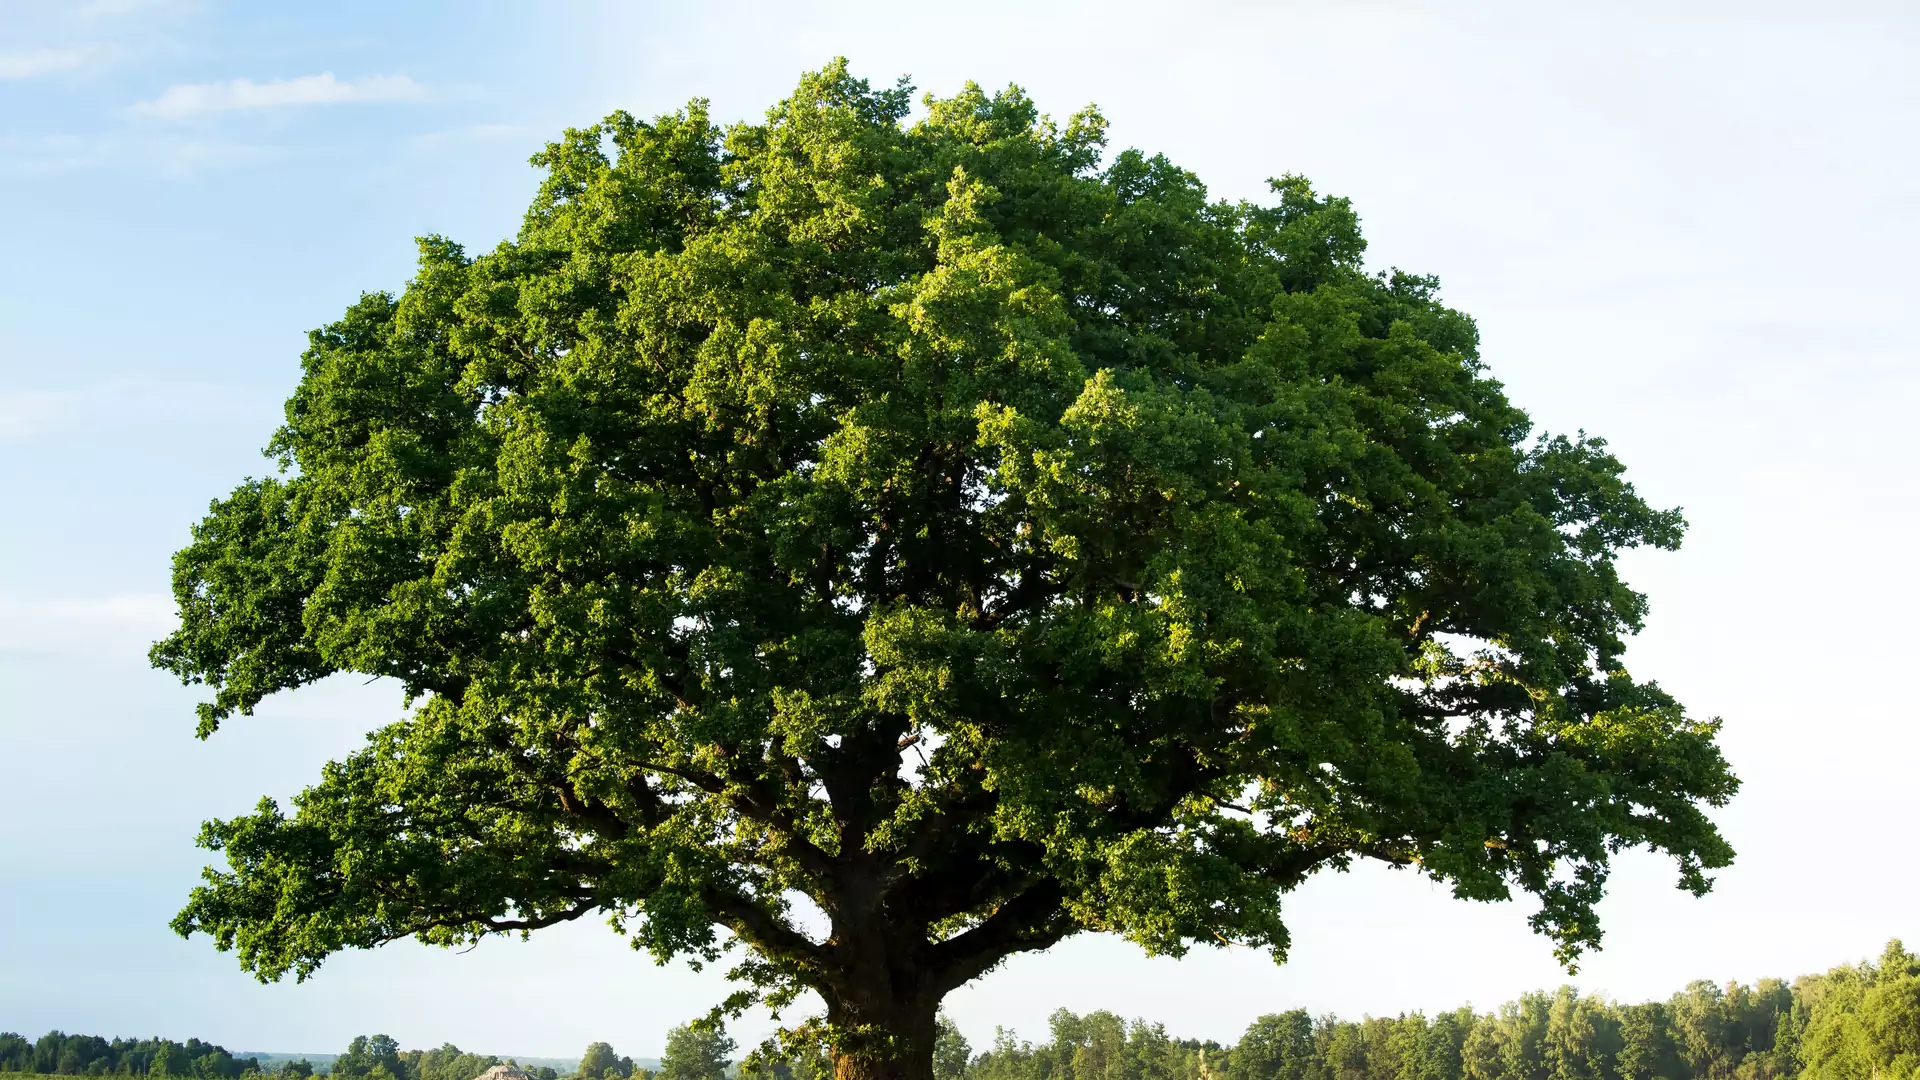 Jakie drzewo roztacza nad tobą opiekę? Mówi to horoskop celtycki